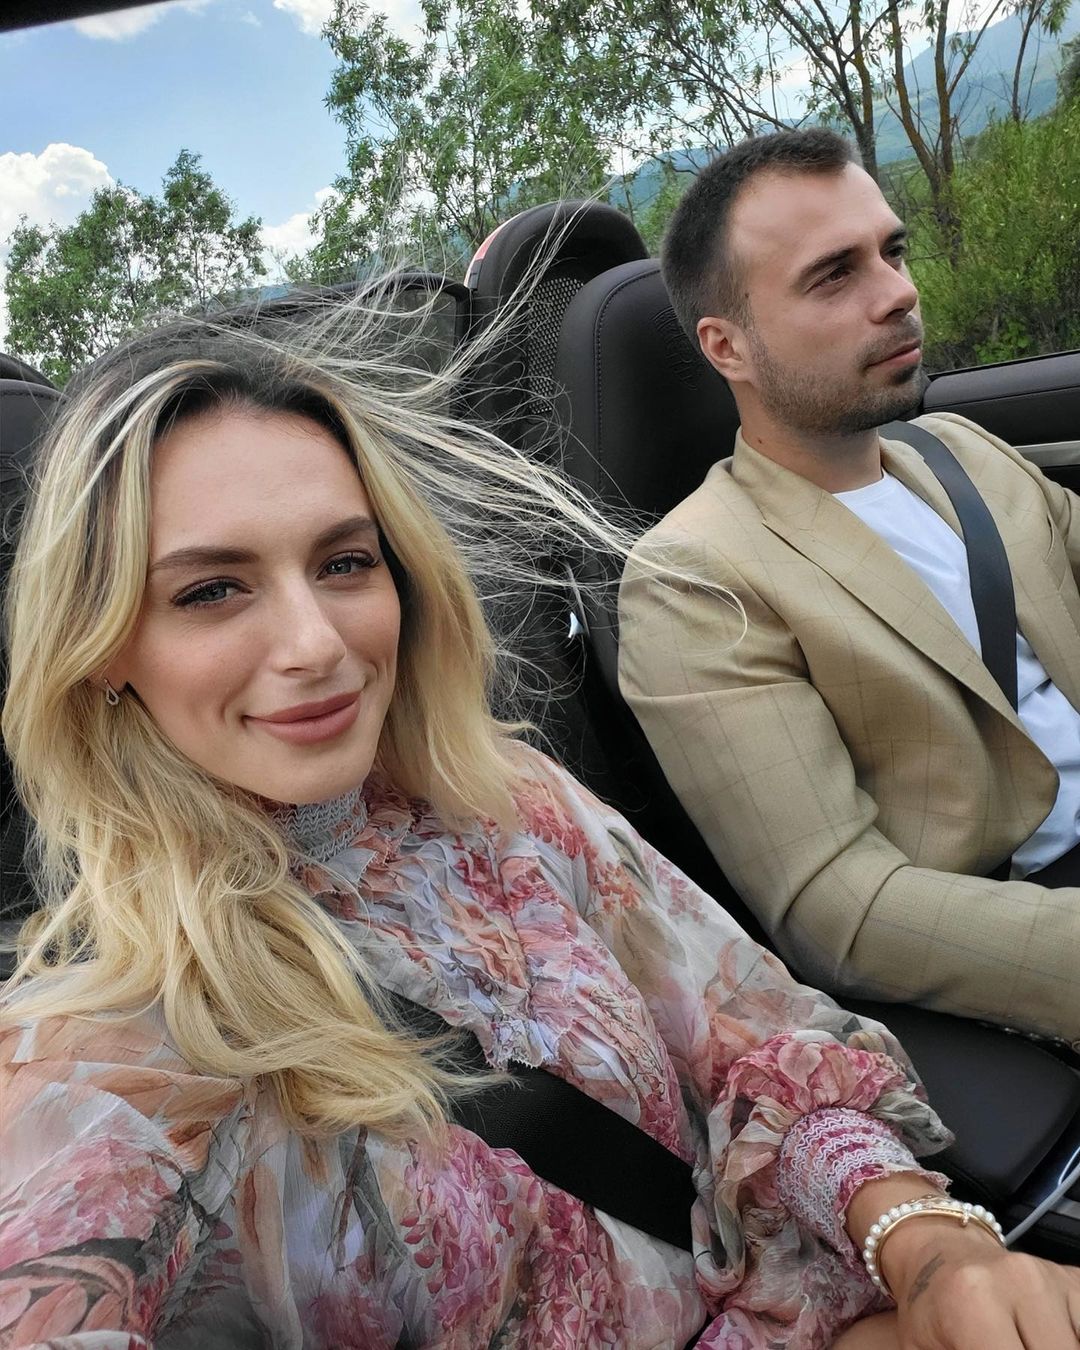 Simone Tempestini a fost cel mai bun prieten al fostului logodnic al Anei Bogdan / Foto: Instagram